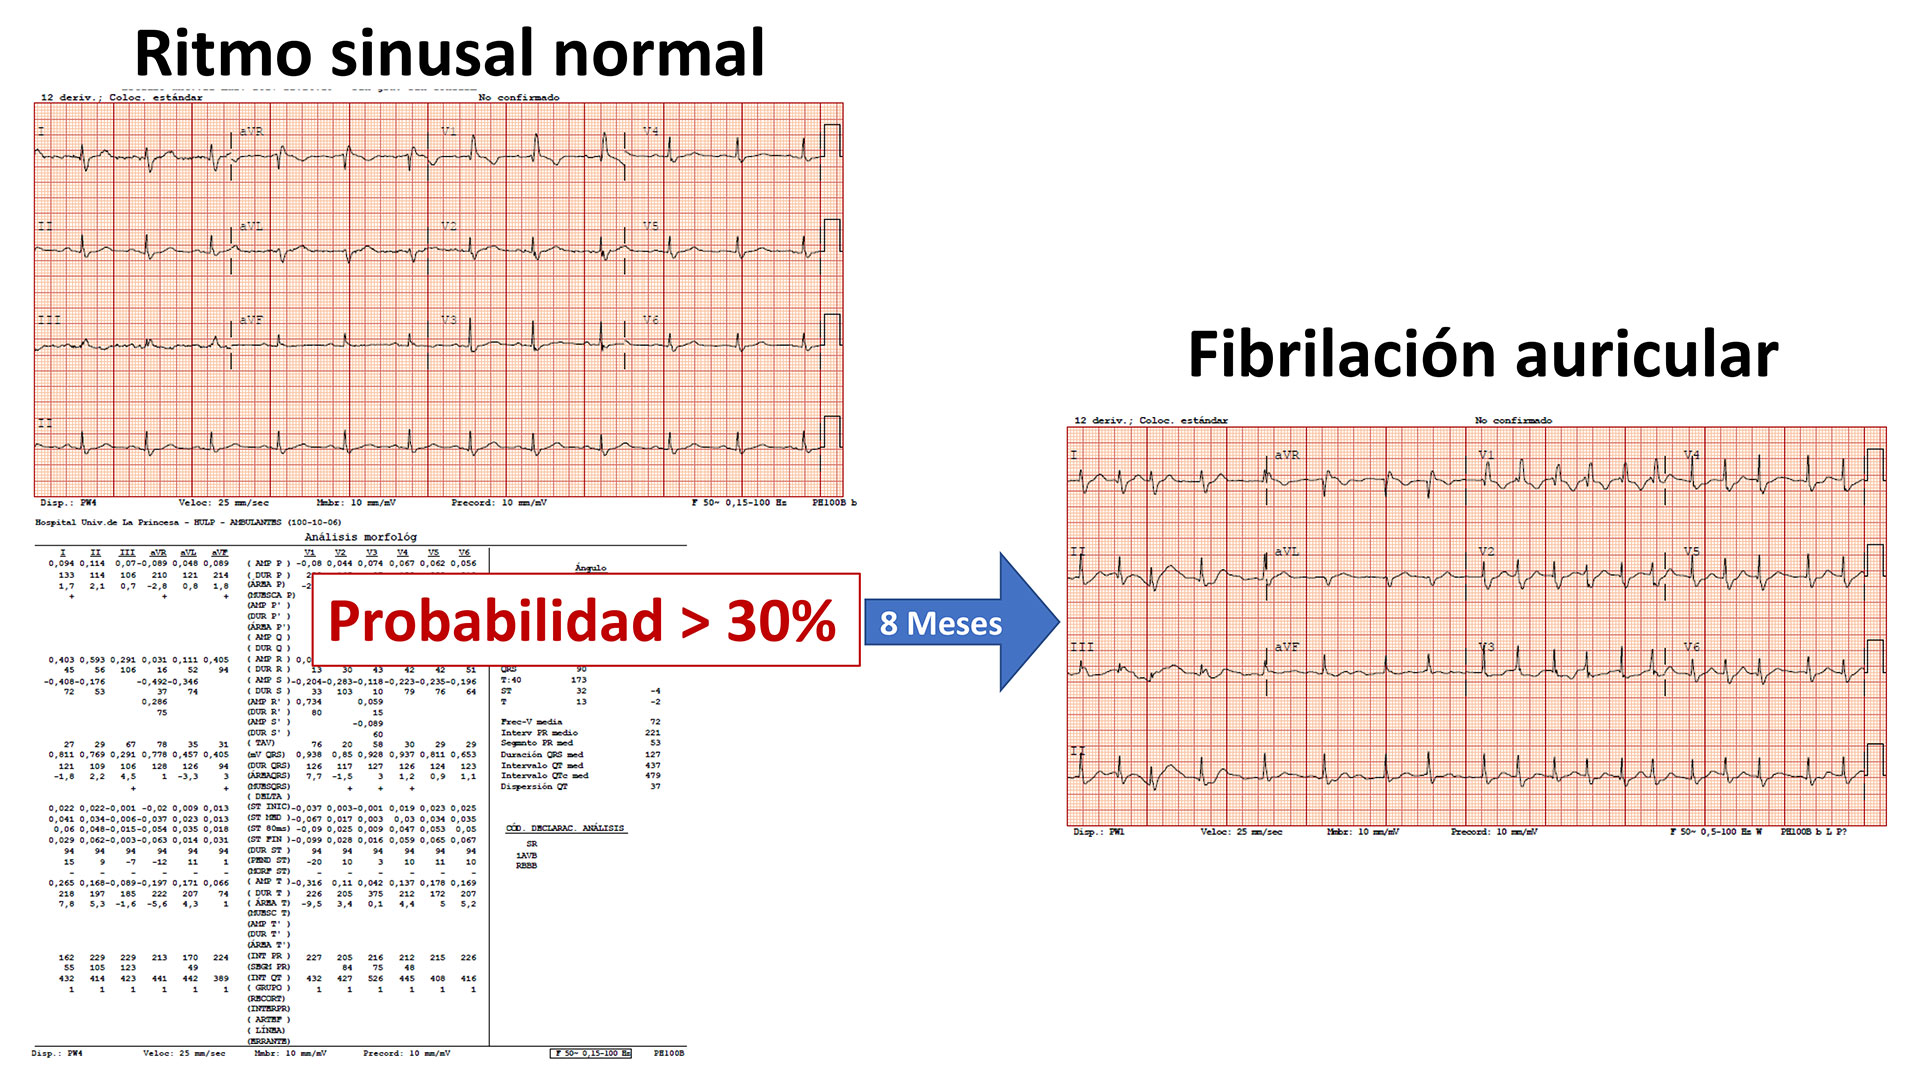 Imágenes de dos electrocardiogramas mostrando un ritmo sinusal normal y otro a los 8 meses con fibrilación auricular